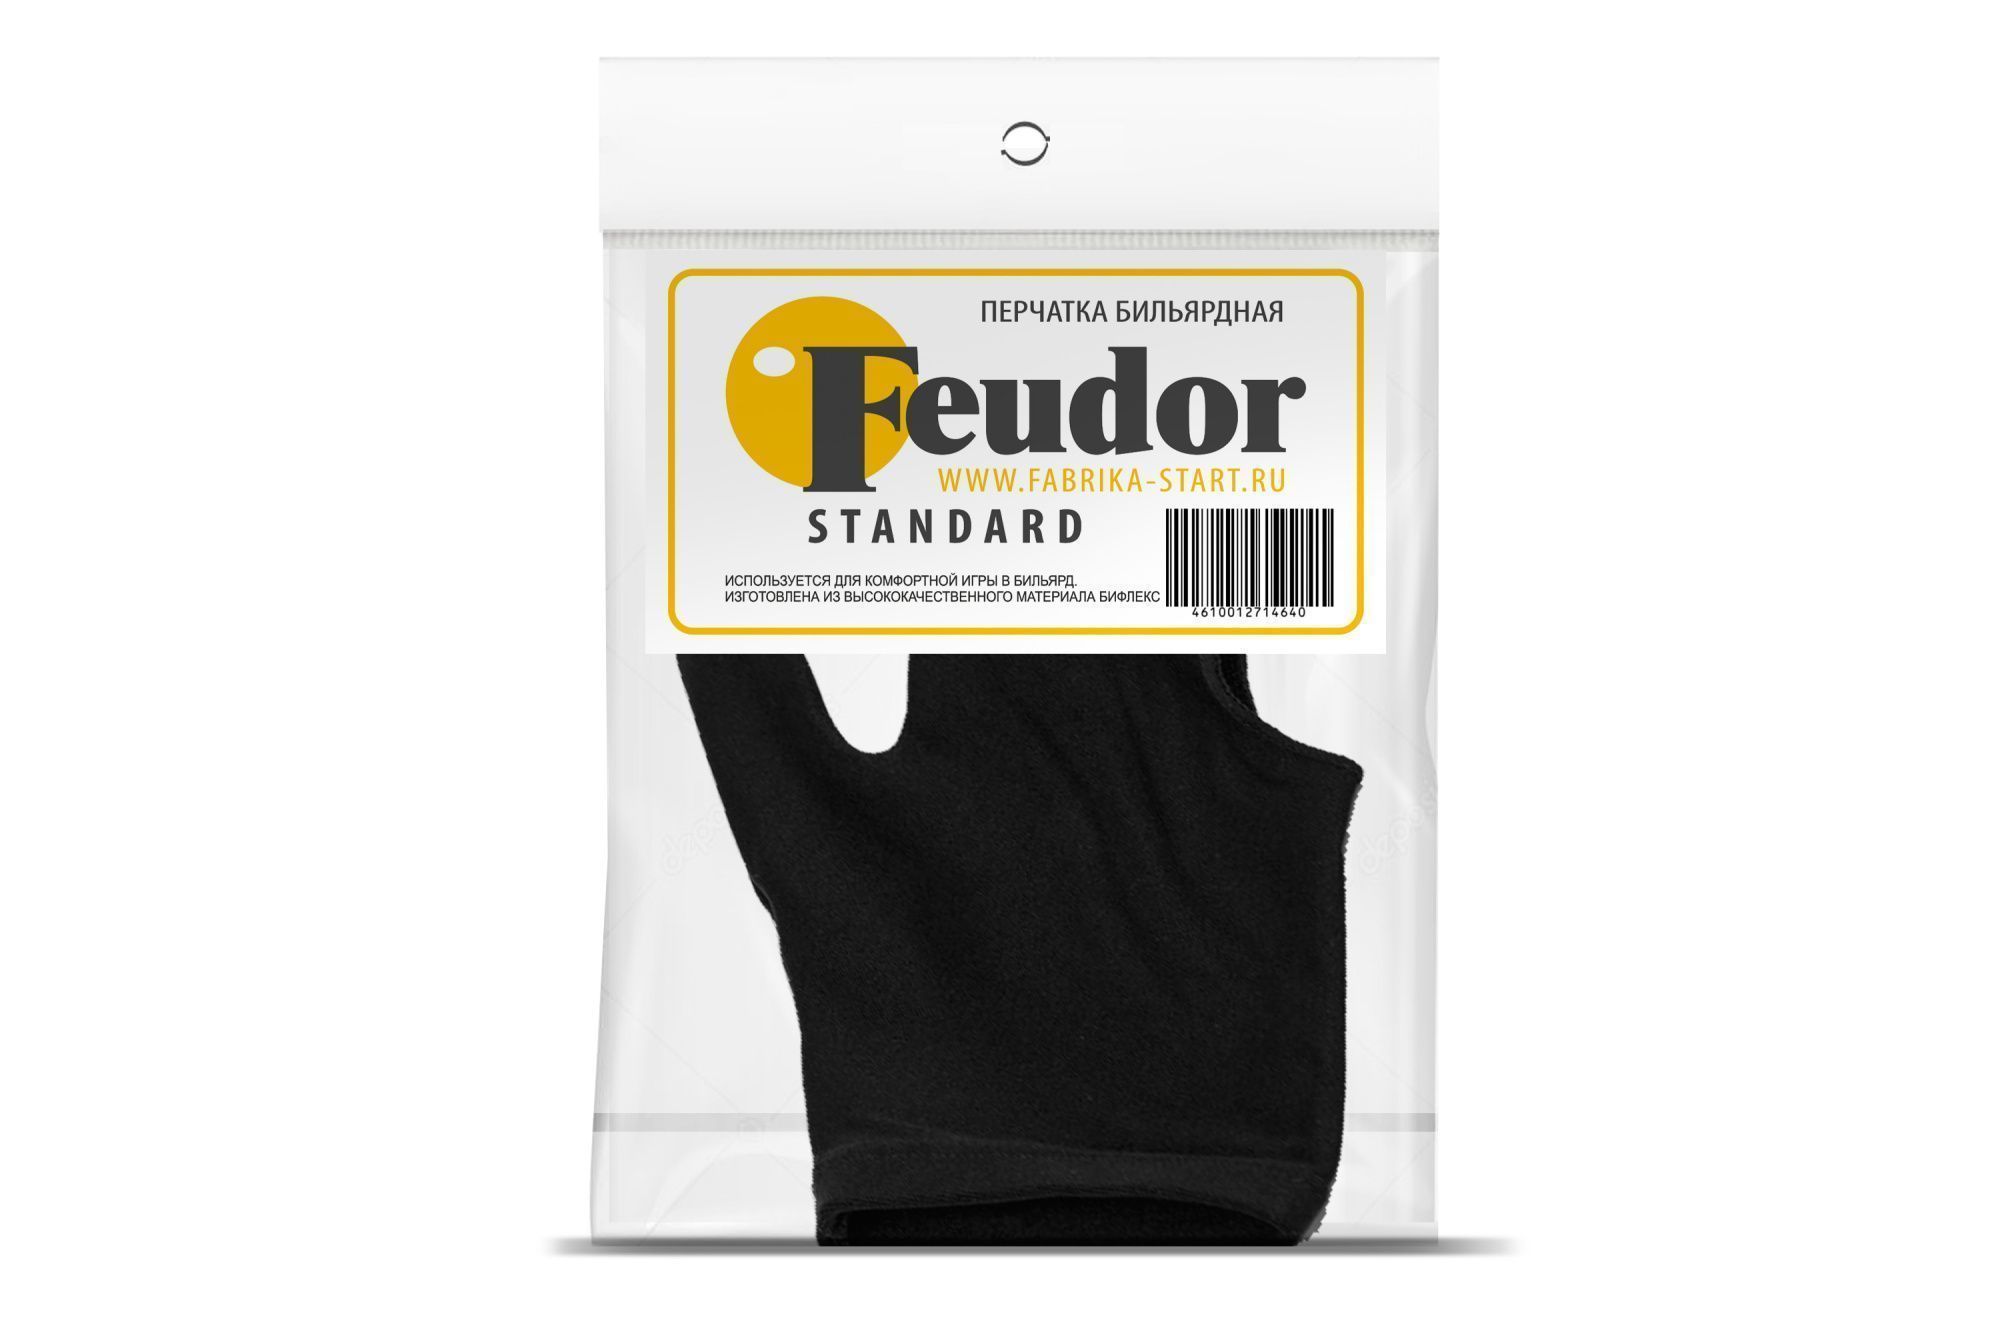 Перчатка-бильярдная Feudor Standard black S